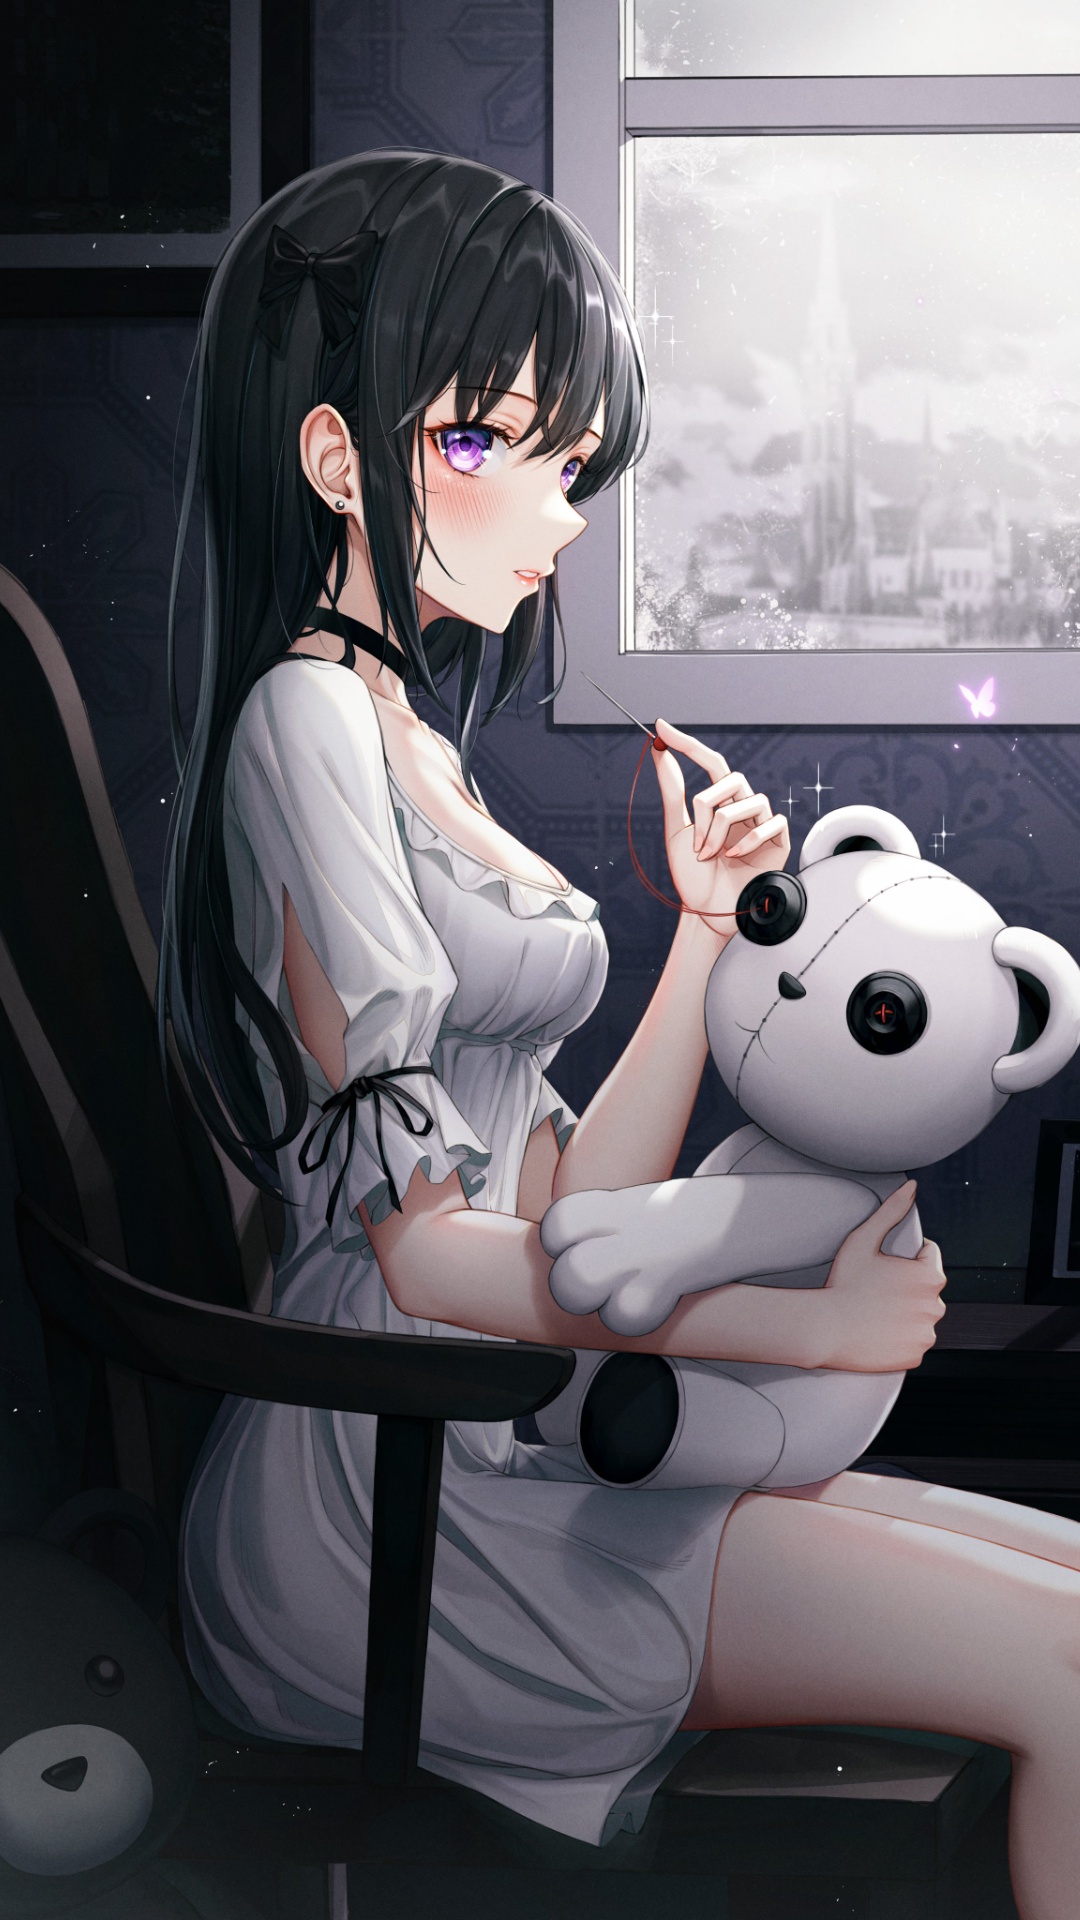 Wallpaper Anime Girl Sitting